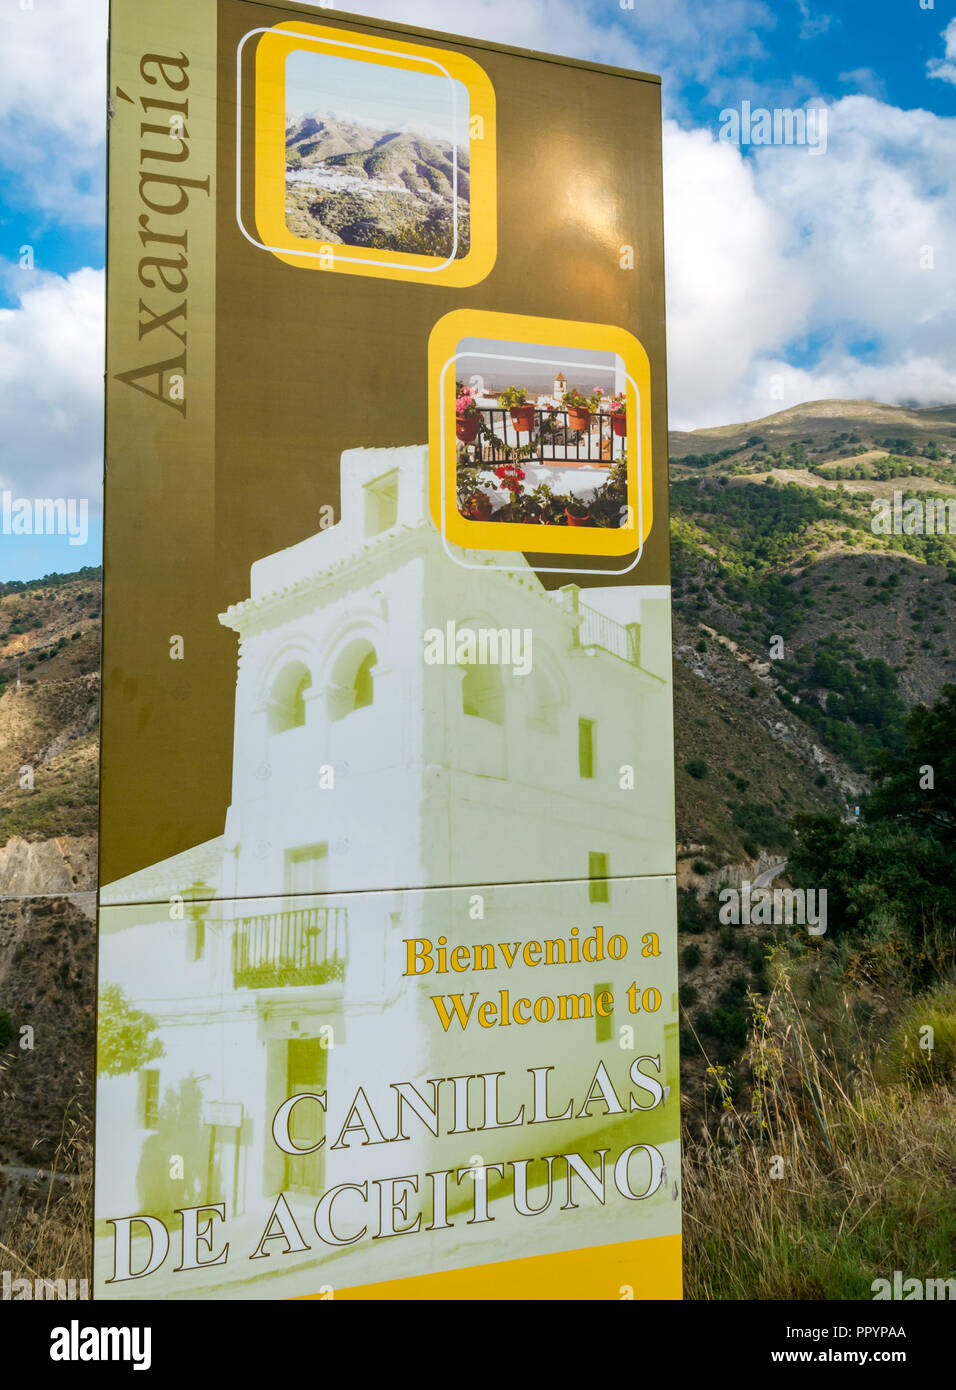 Anmelden, um Canillas de Acientuna, Mudejar route, Axarquia, Andalusien, Spanien Willkommen Stockfoto